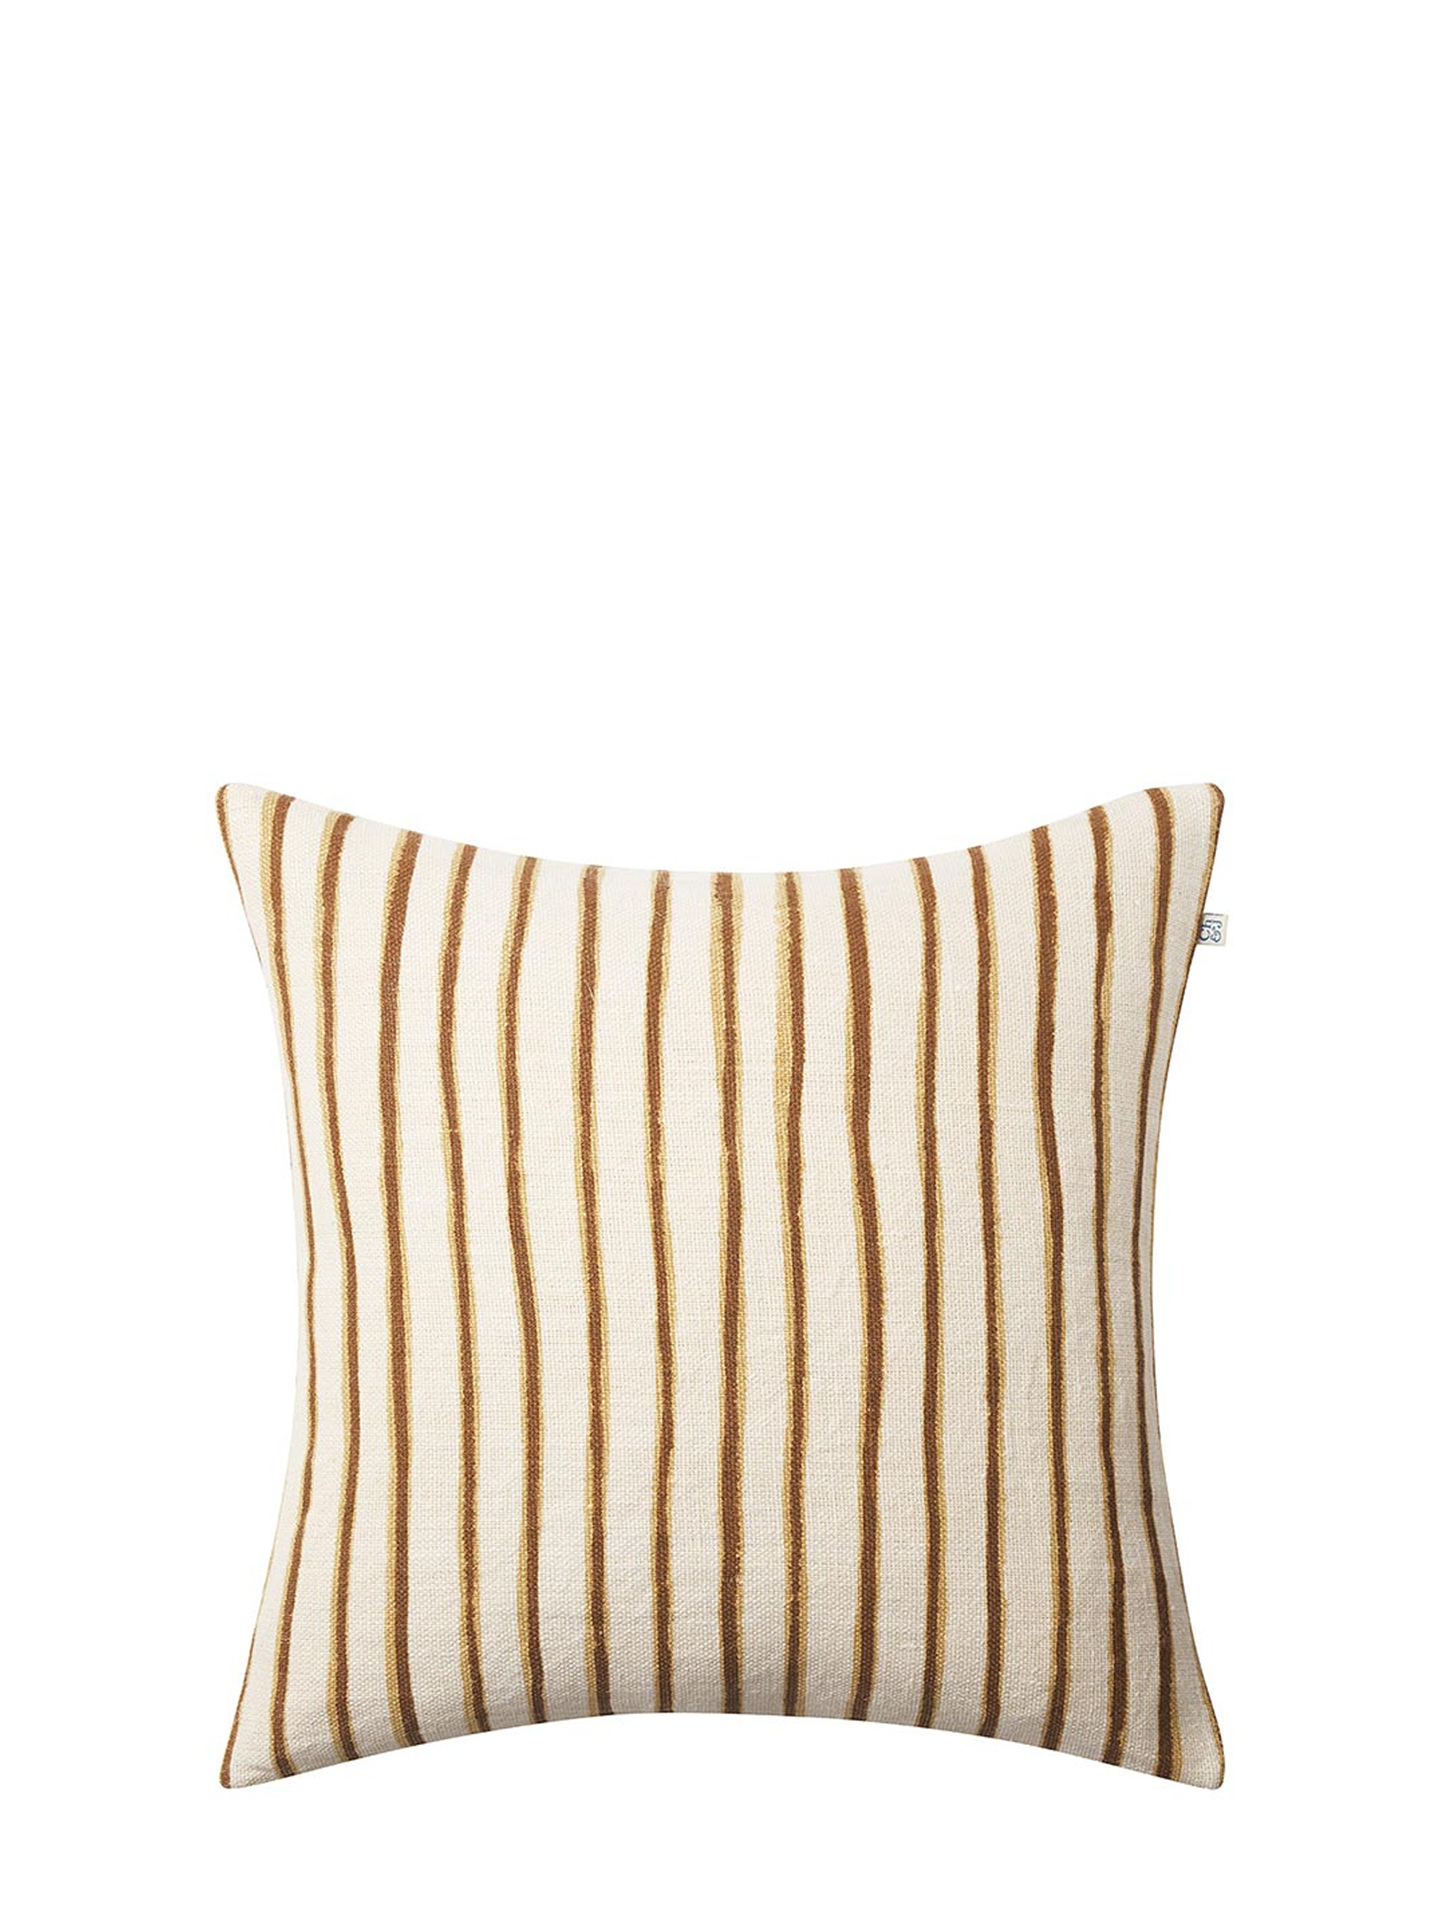 Jaipur Stripe Cushion Cover, Khaki/Taupe